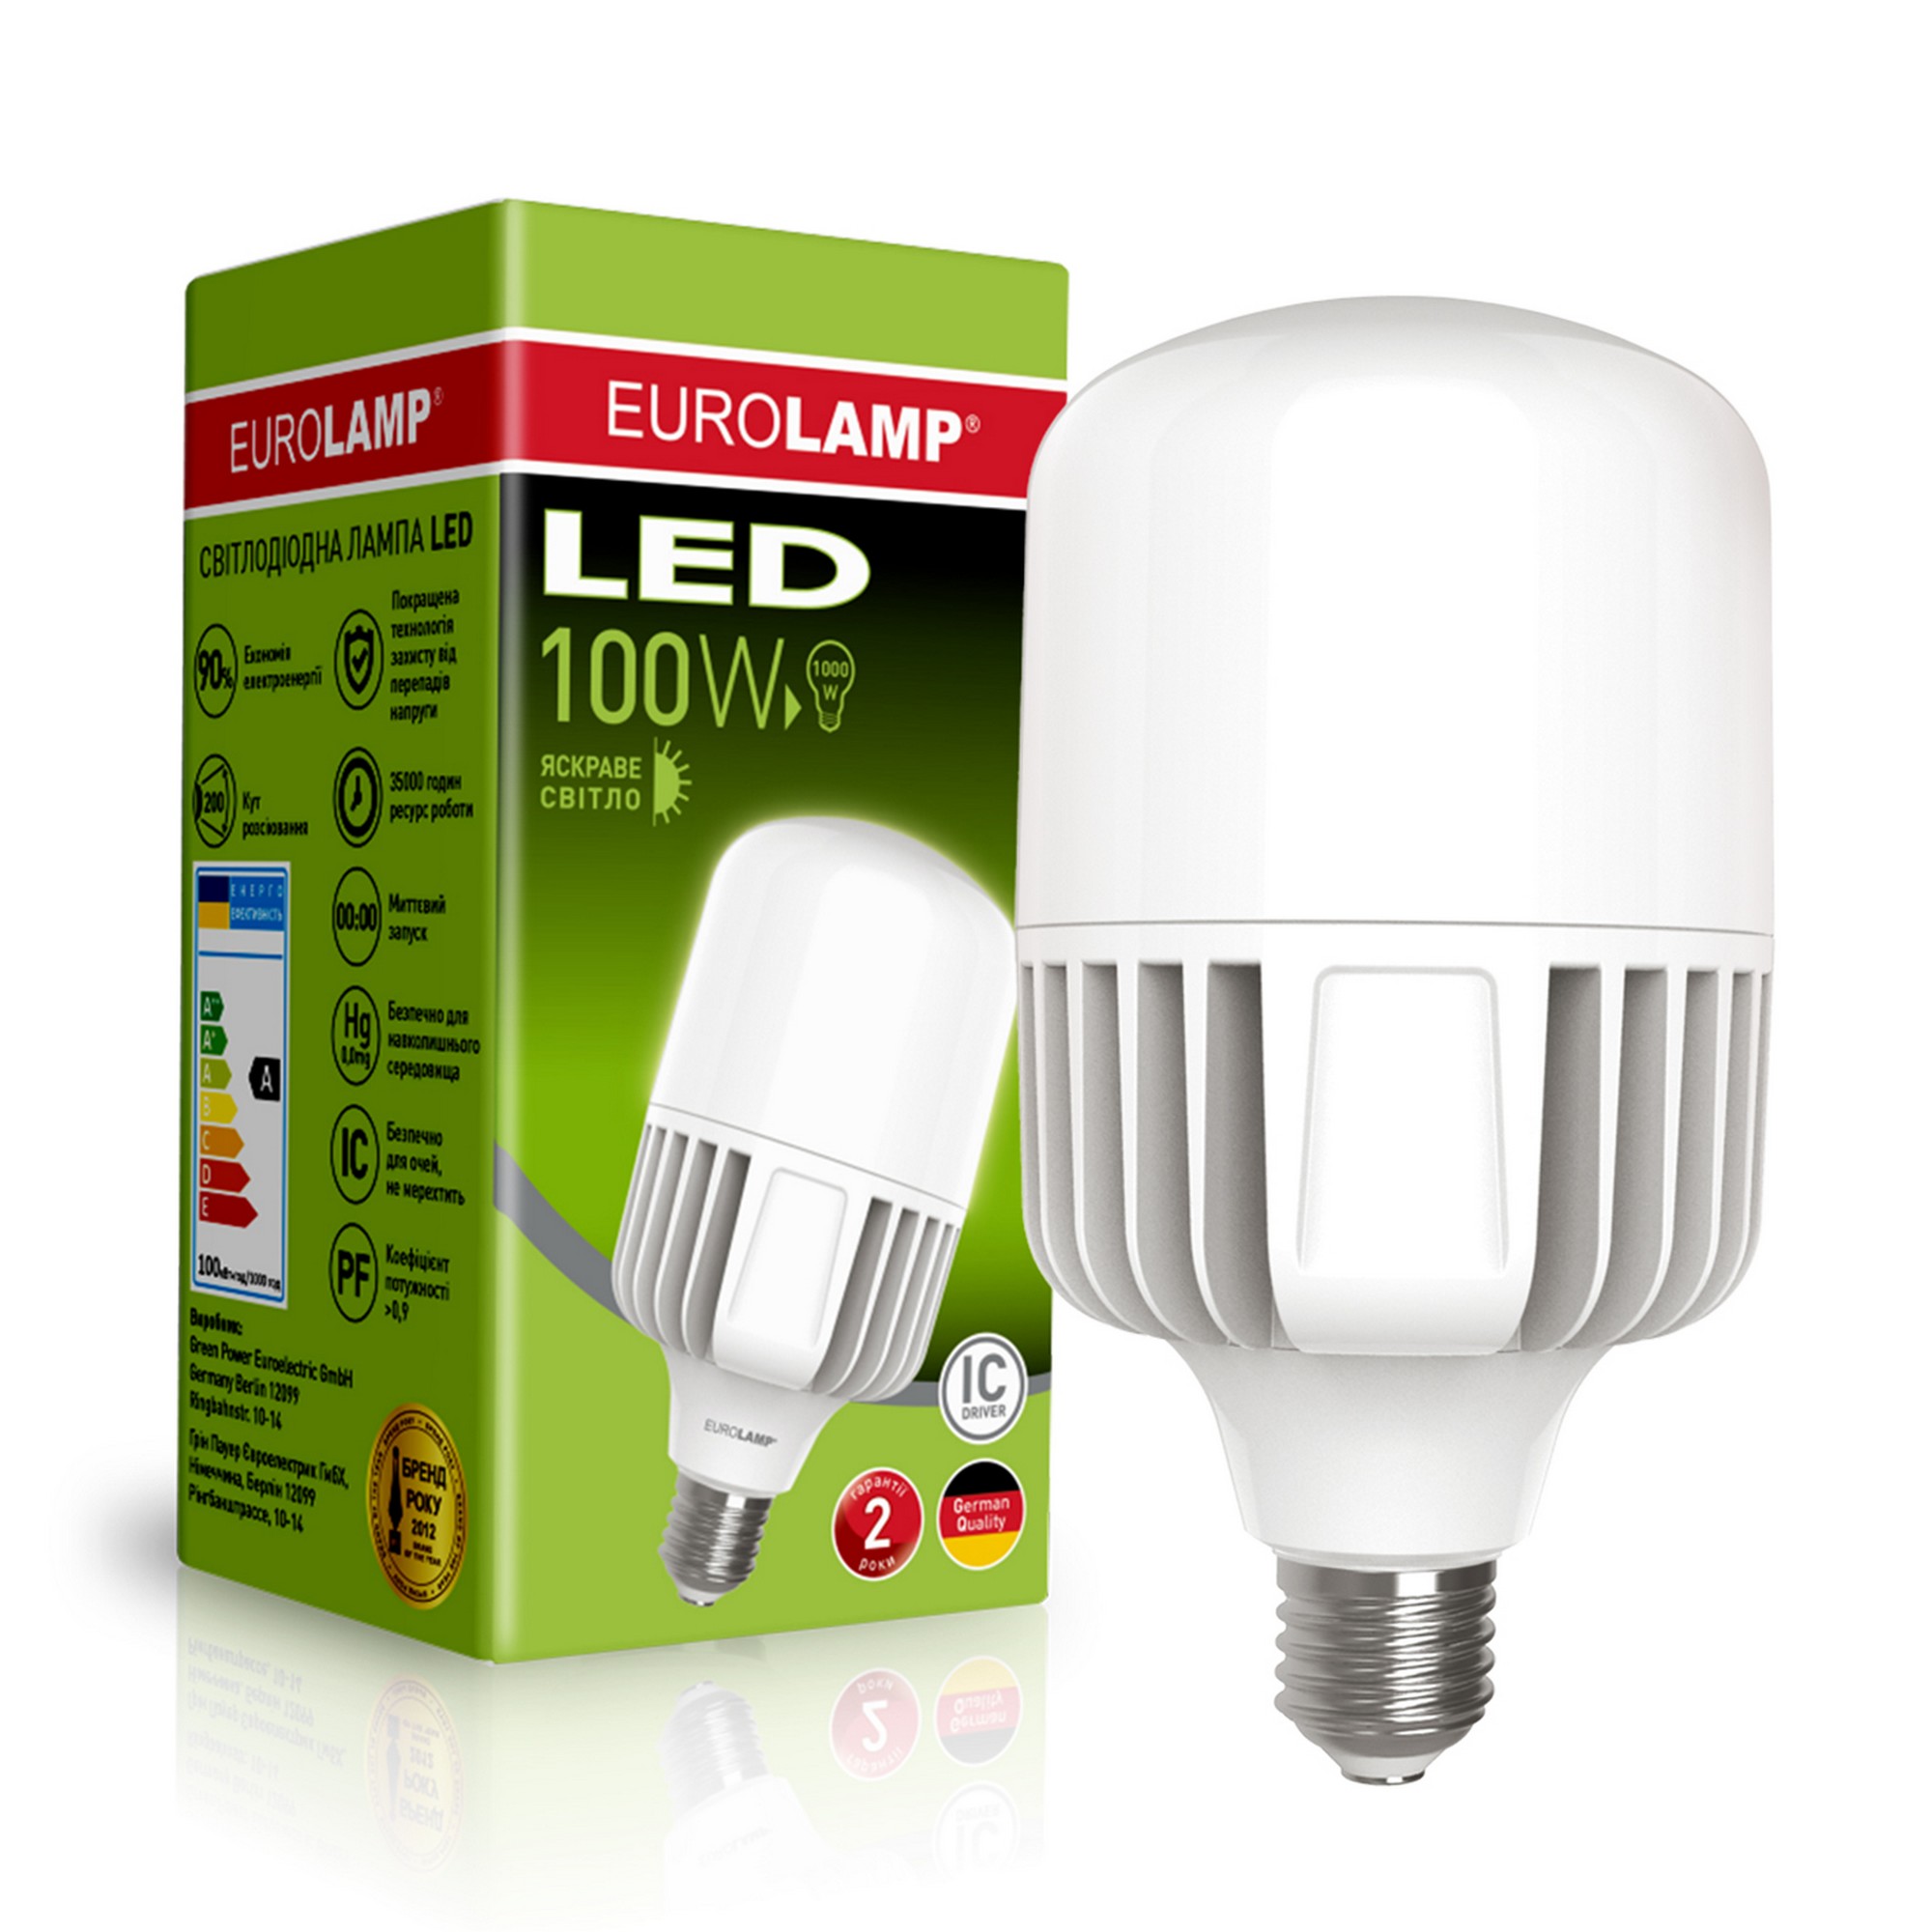 Отзывы светодиодная лампа eurolamp мощностью 100 вт Eurolamp LED 100W E40 5000K в Украине